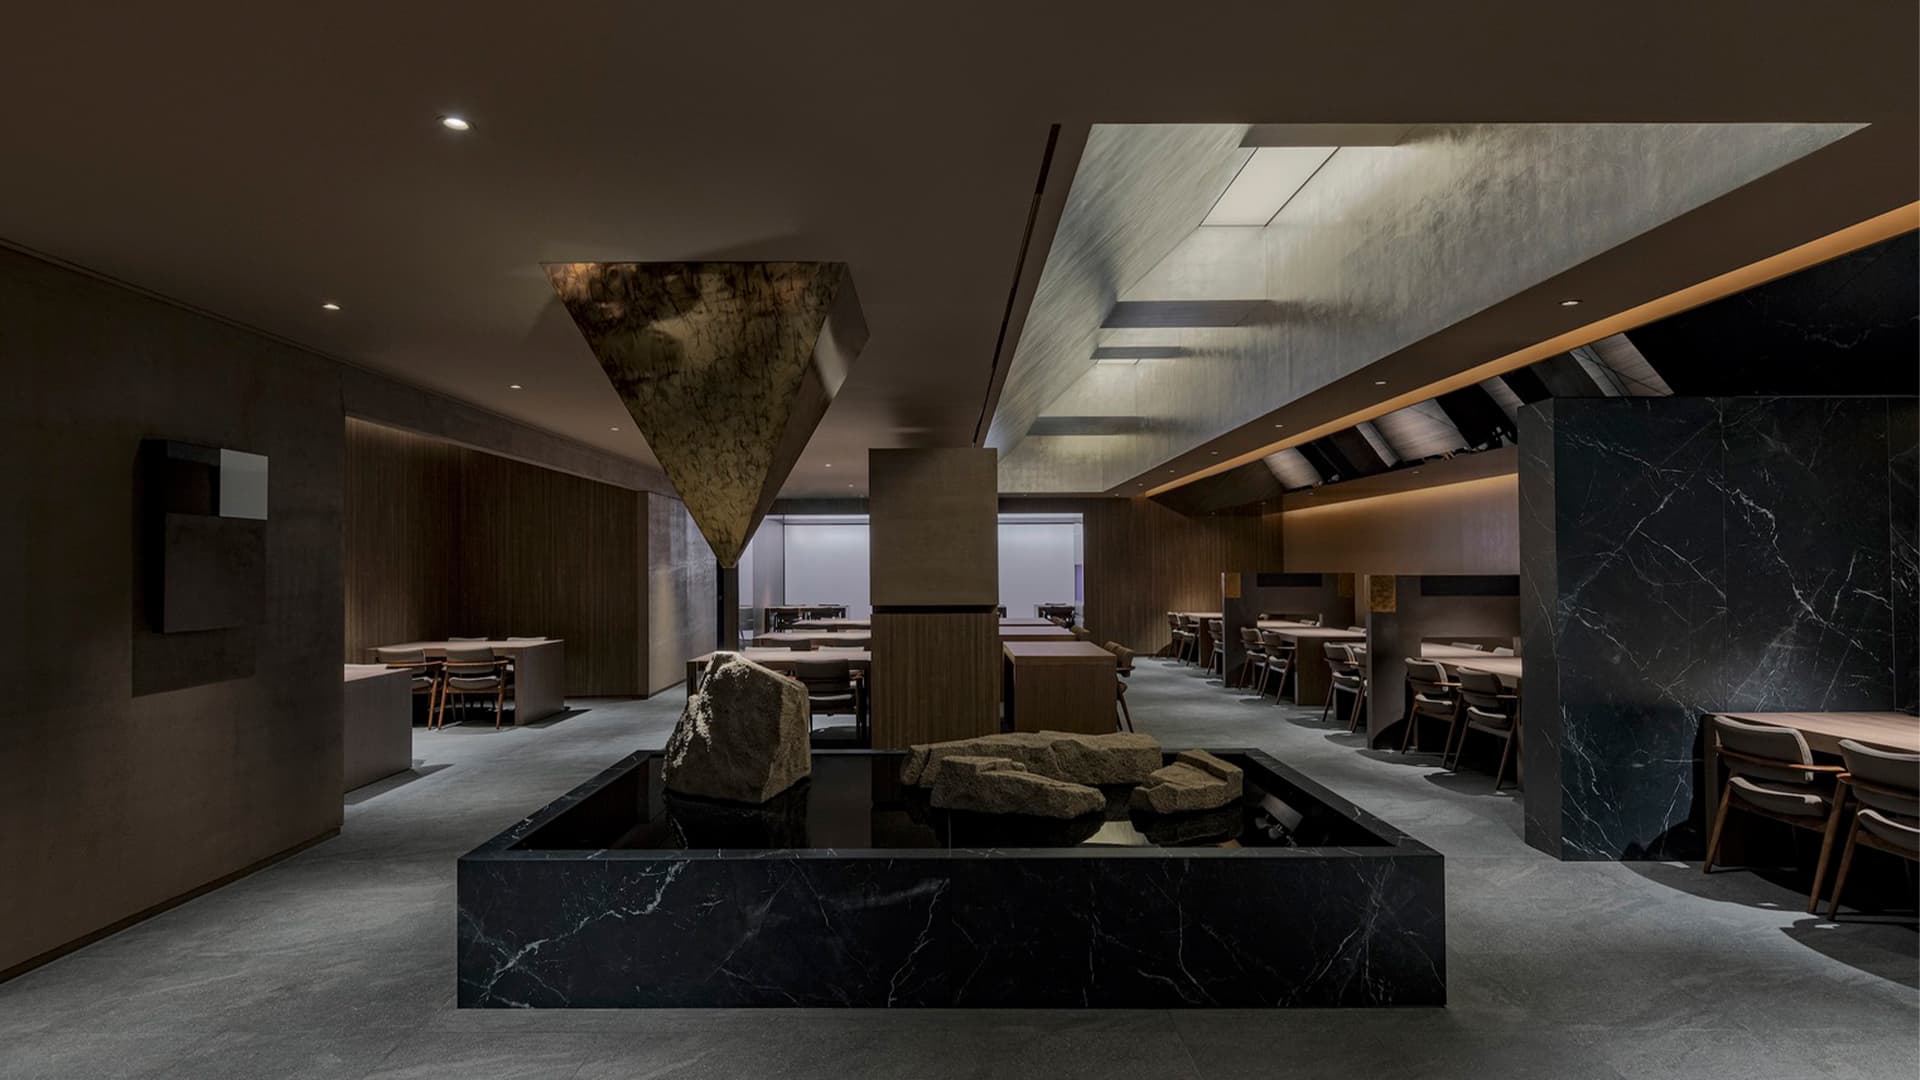 Благородный интерьер корейского ресторана с камерными приватными зонами — проект Design Studio Minwoo